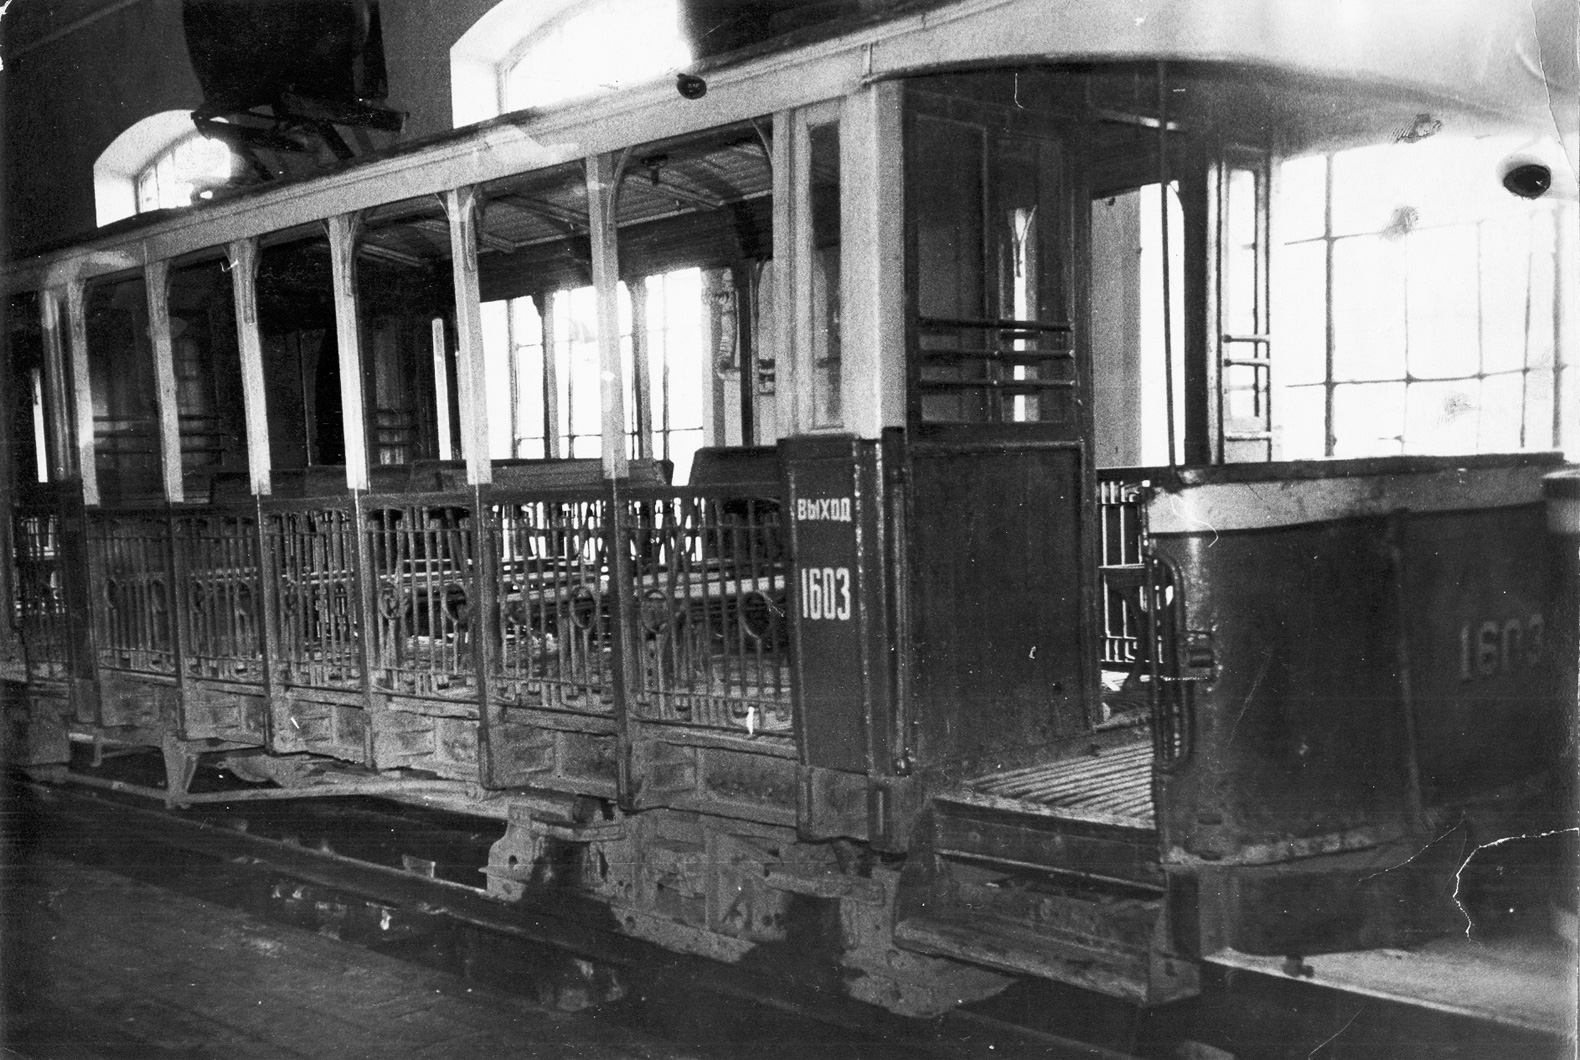 Odessa, Baume & Marpent Odessa Type G № 1603; Odessa — Old Photos: Tramway